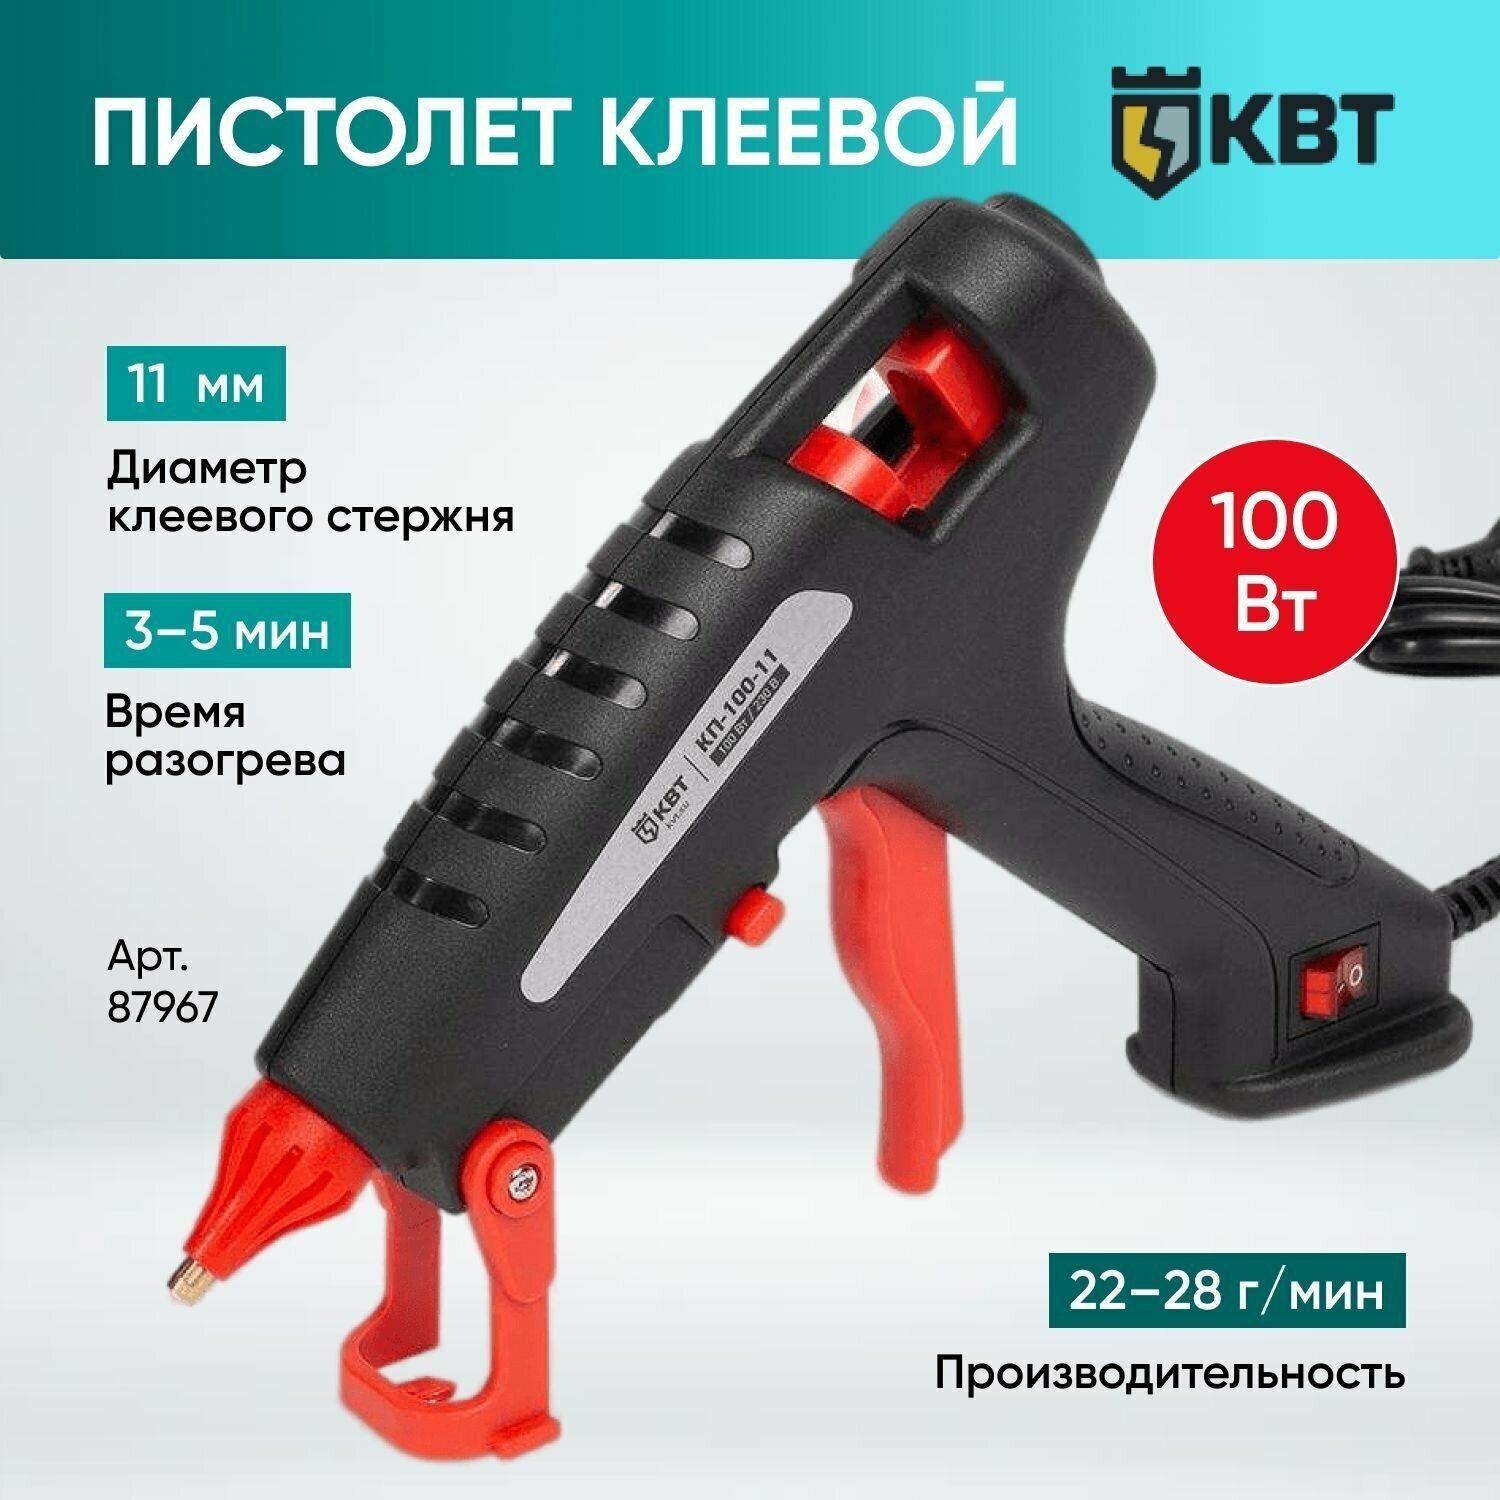 Клеевой (термоклеевой) пистолет 100 Вт. КВТ КП-100-11 87967 строительный с выключателем для рукоделия